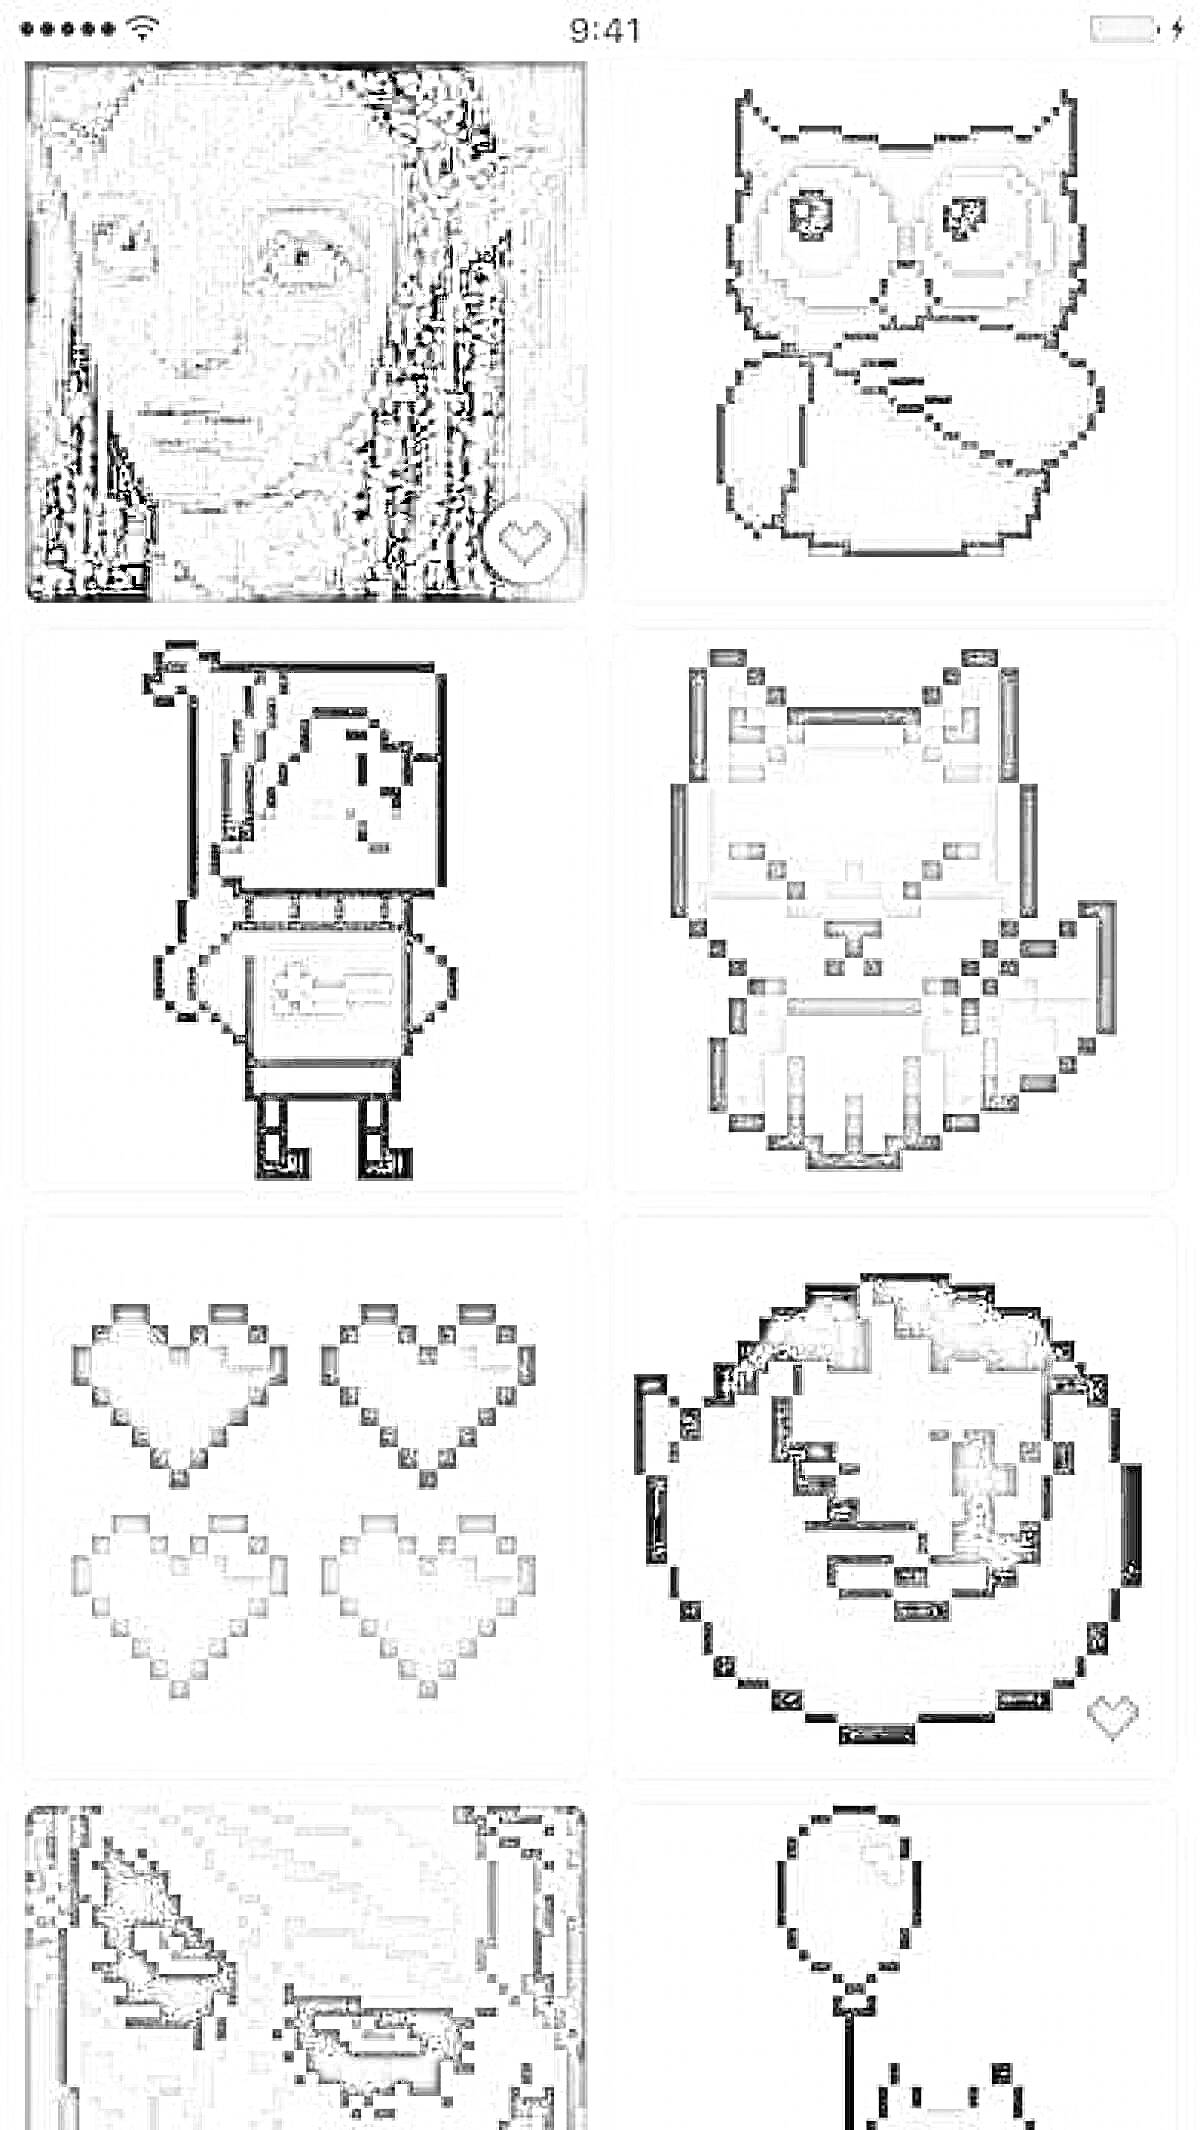 Раскраска Пиксельная раскраска с изображениями: лицо персонажа, сова, эльф, лиса, четыре сердечка, улыбающееся лицо, лицо другого персонажа, кот с воздушным шариком.